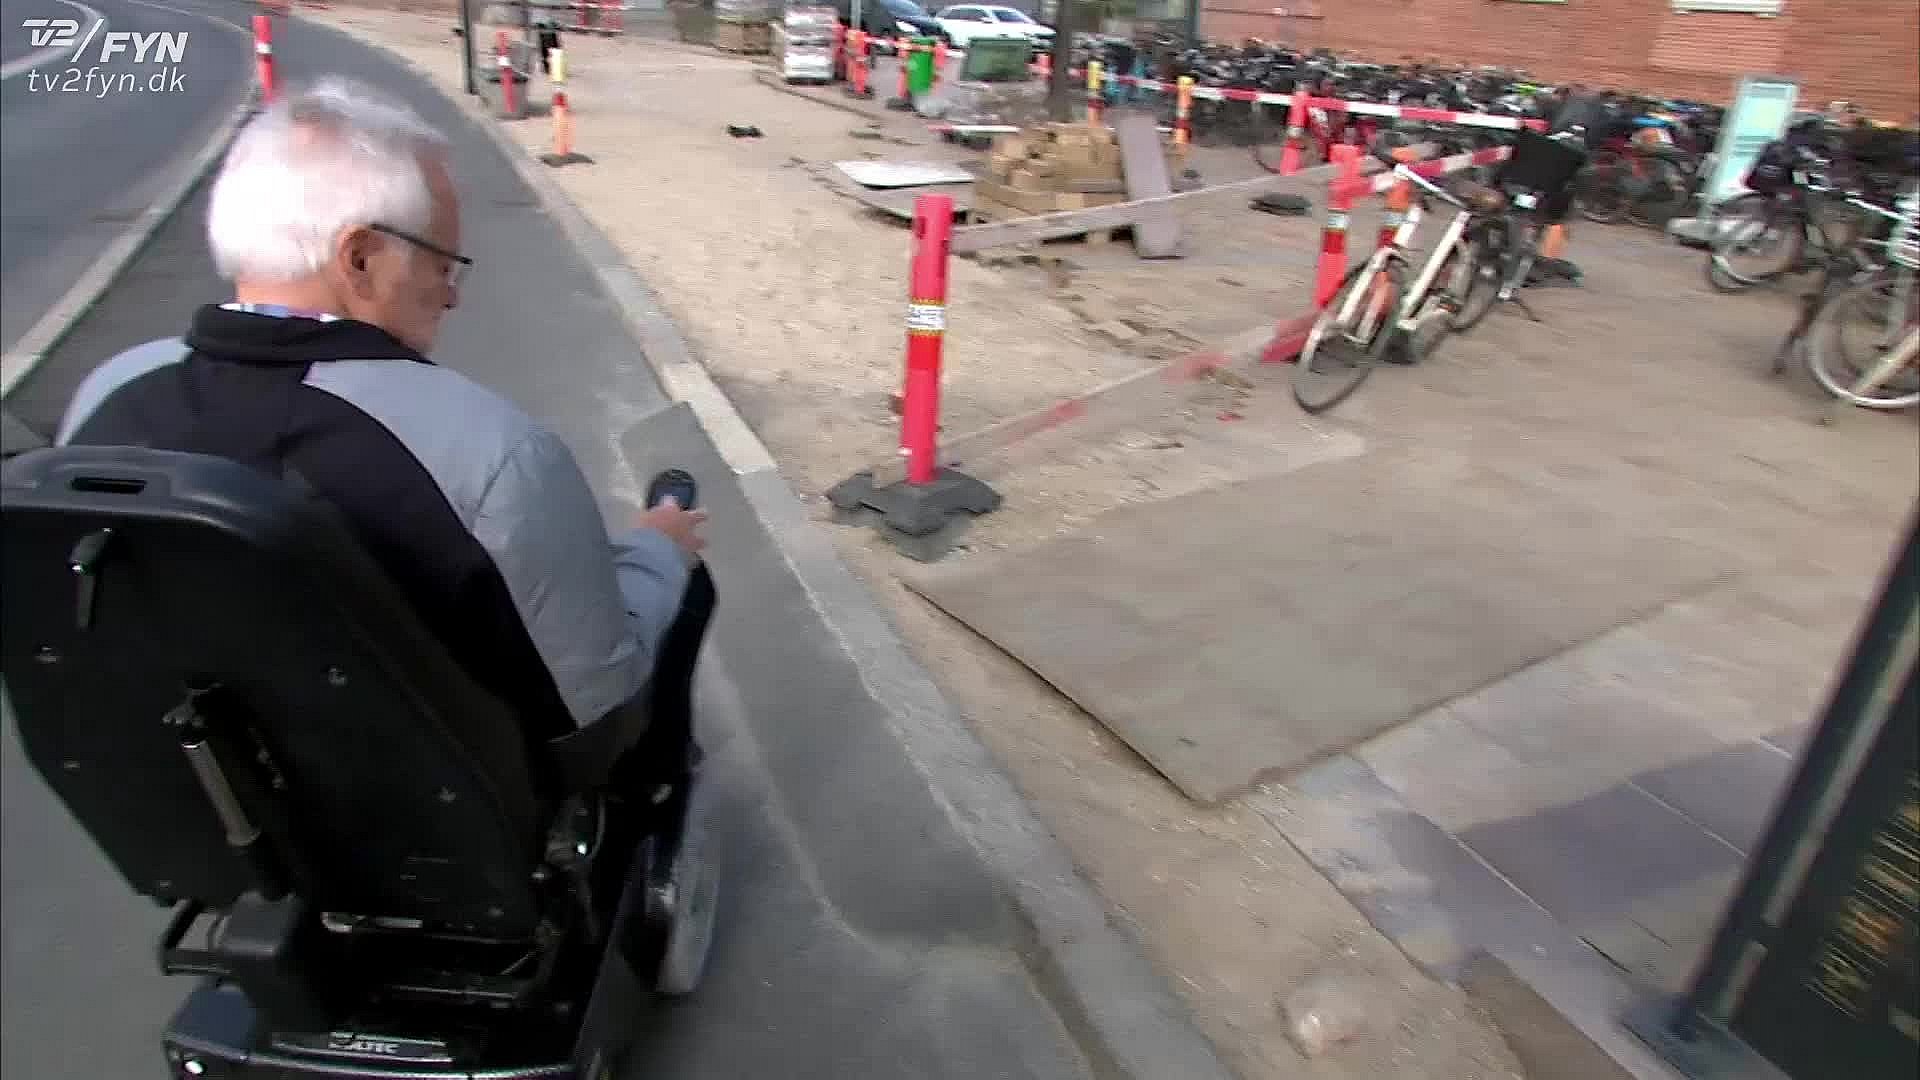 Abnorm Forsvinde Gæstfrihed Forhindringer: Med kørestol gennem vejarbejdet? God fornøjelse! | TV 2 Fyn